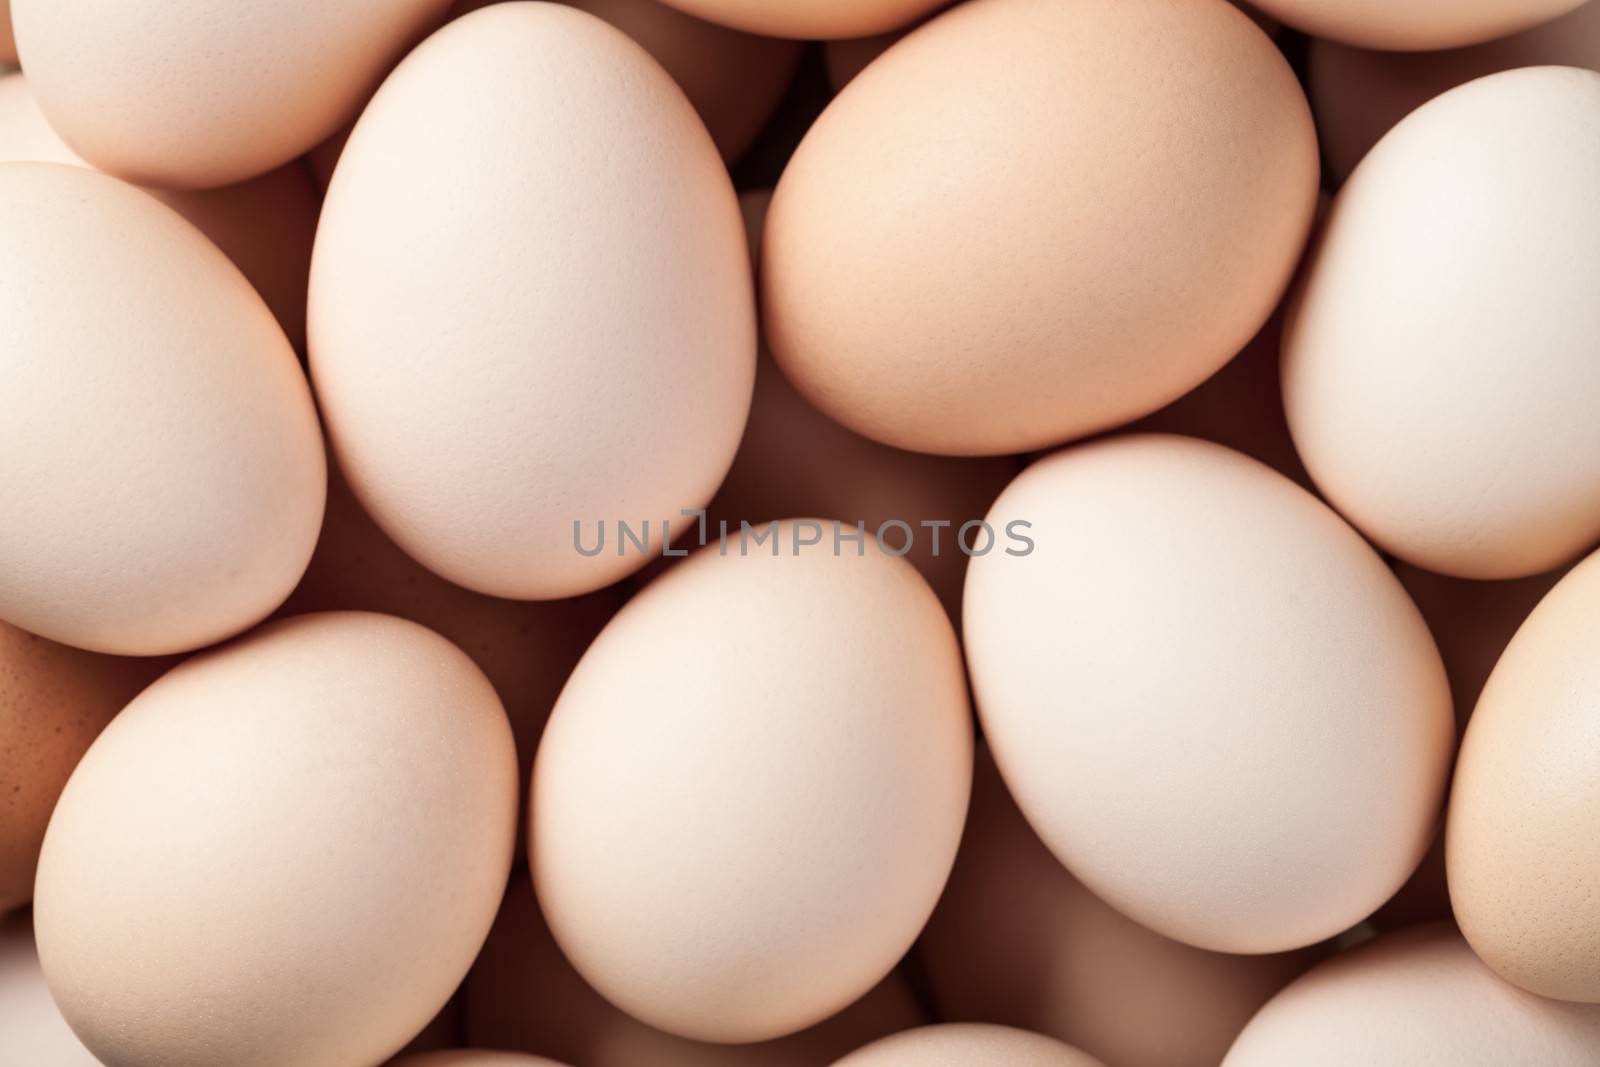 Fresh brown chicken eggs background. Top view